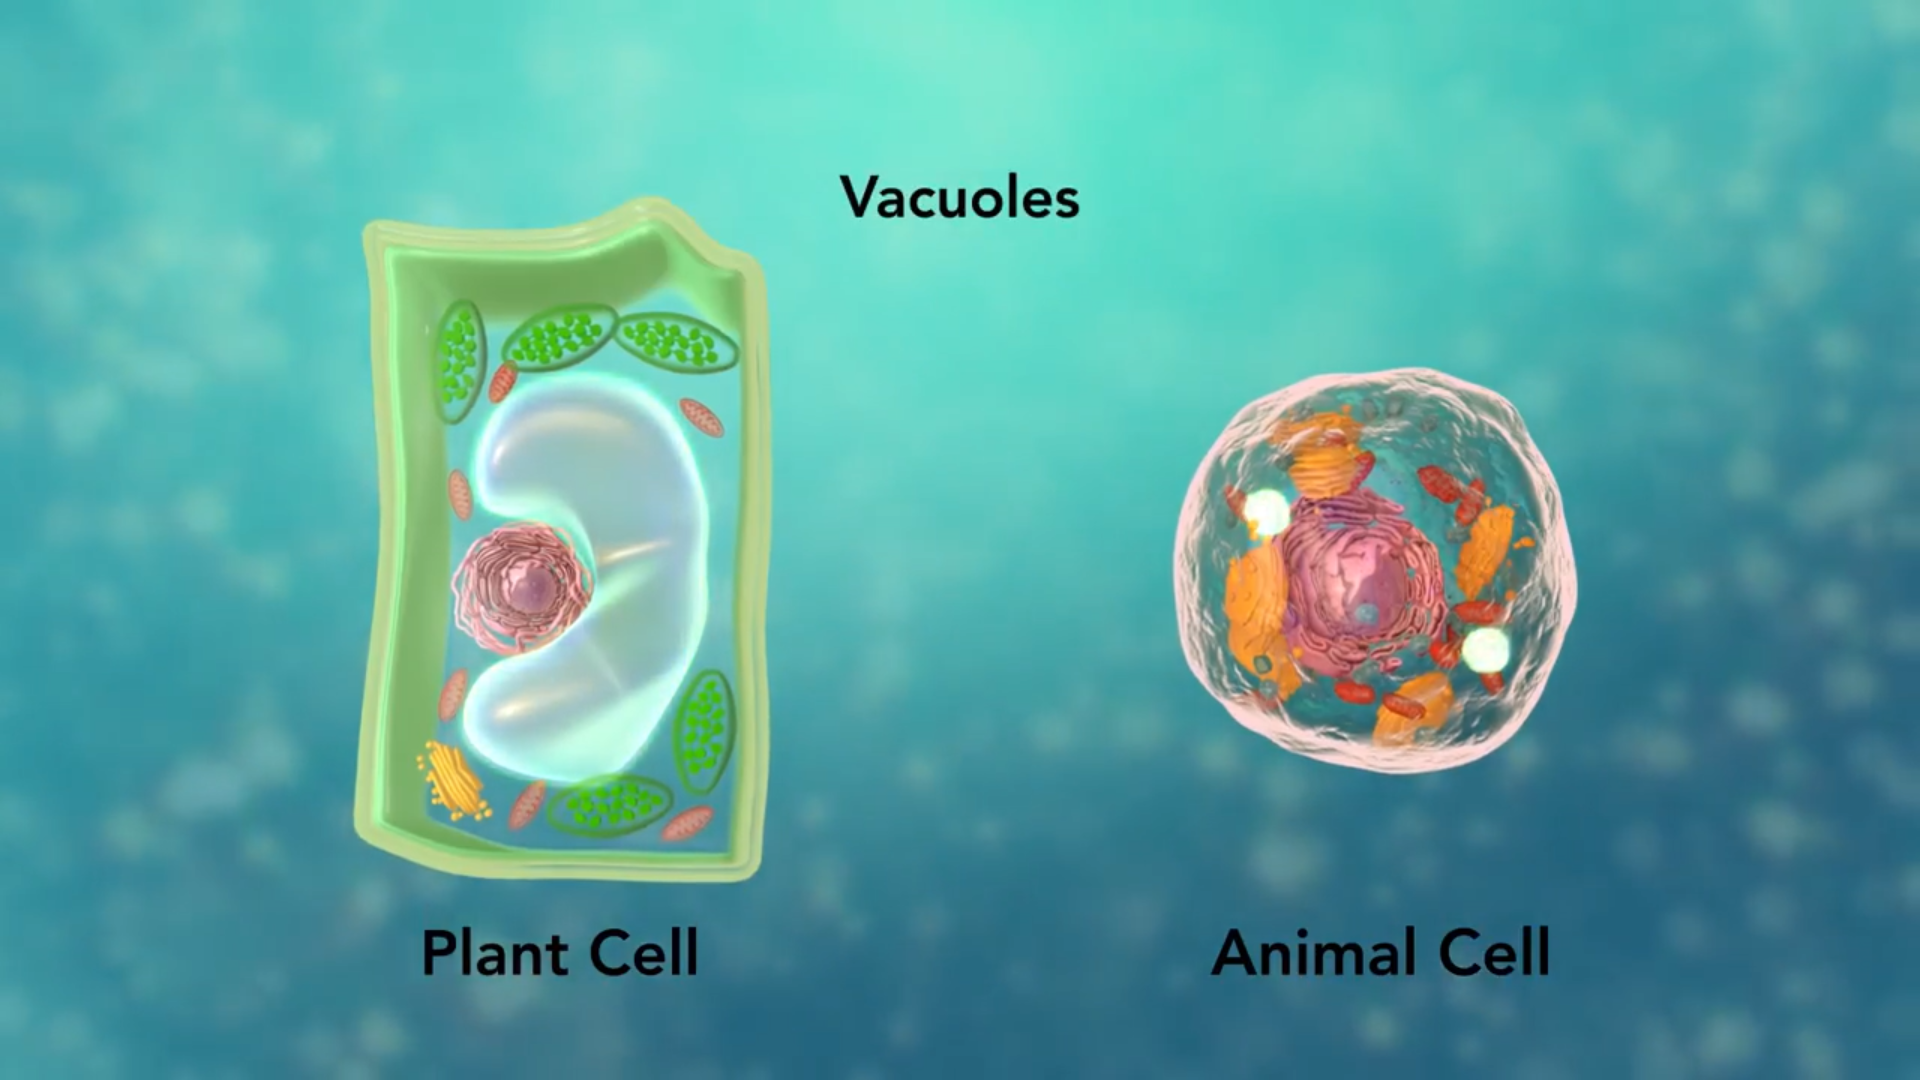 درسینوفن | آموزش آنلاین دوره محور ساختار کامل سلول گیاهی در زیست + فیلم (زیست گیاهی کنکور) + جایزه?